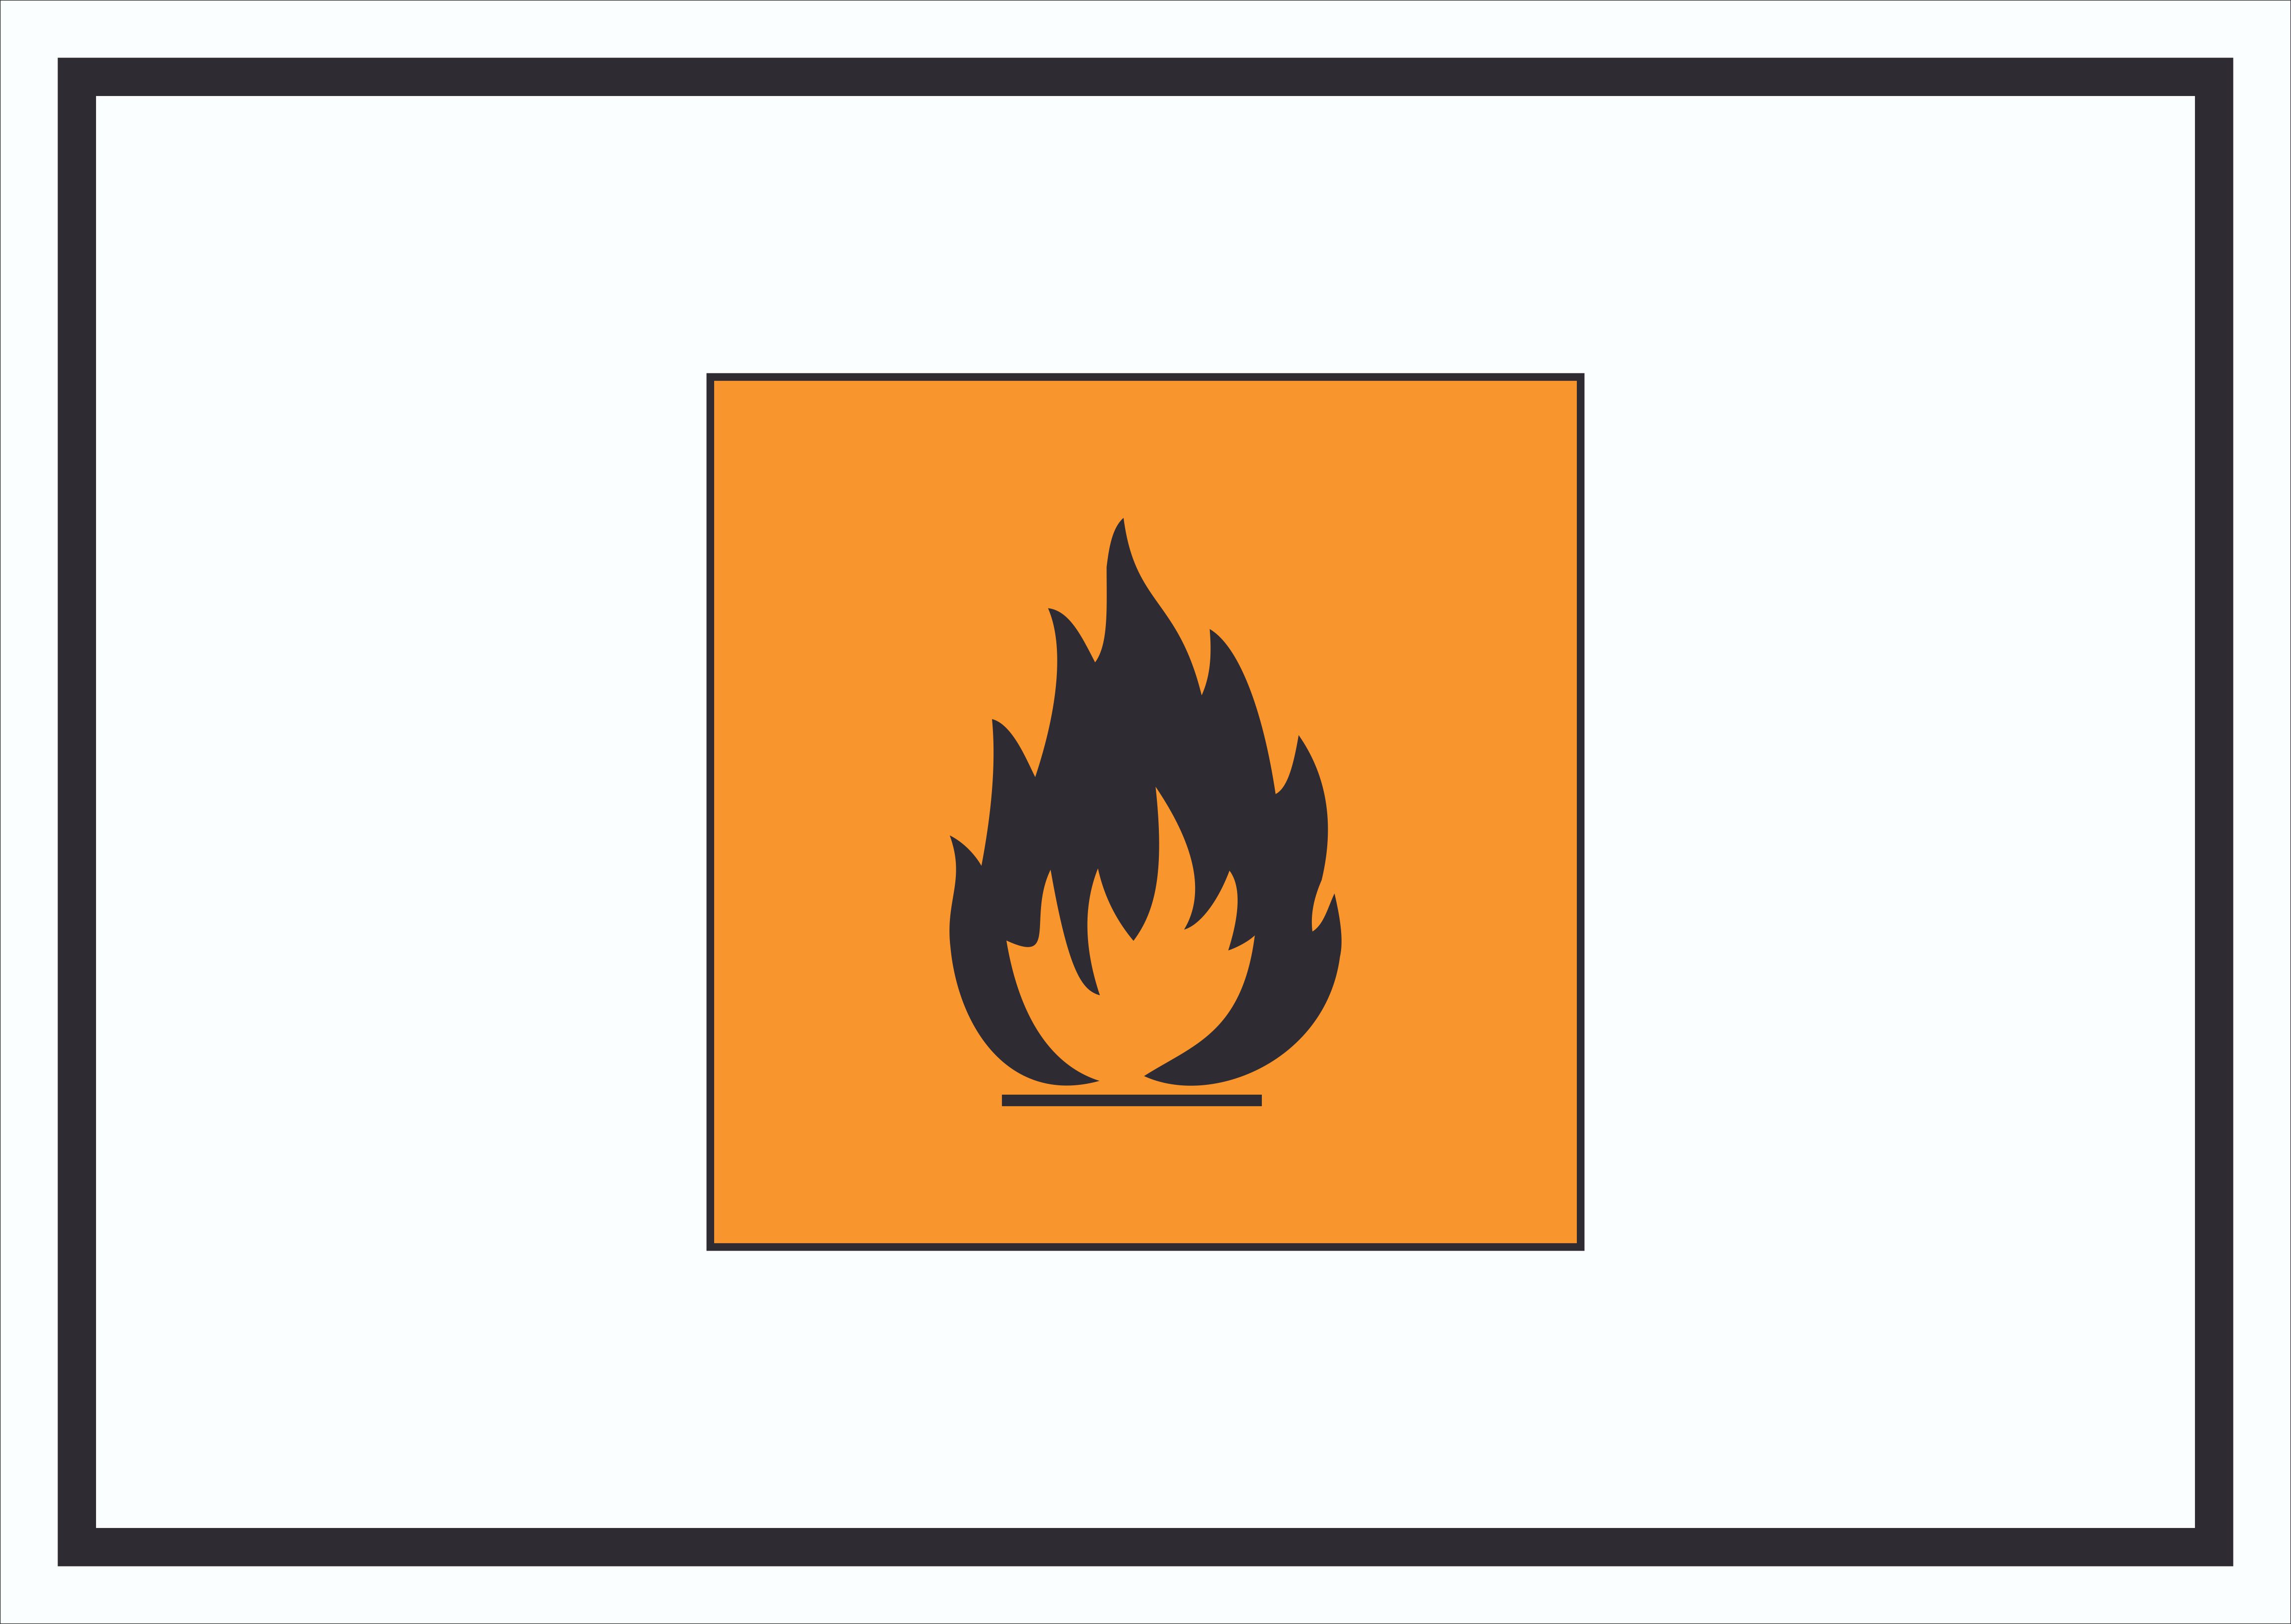 Aufkleber Quadrat Gefahrensymbol Entzündbar Symbol Brand Flamme 